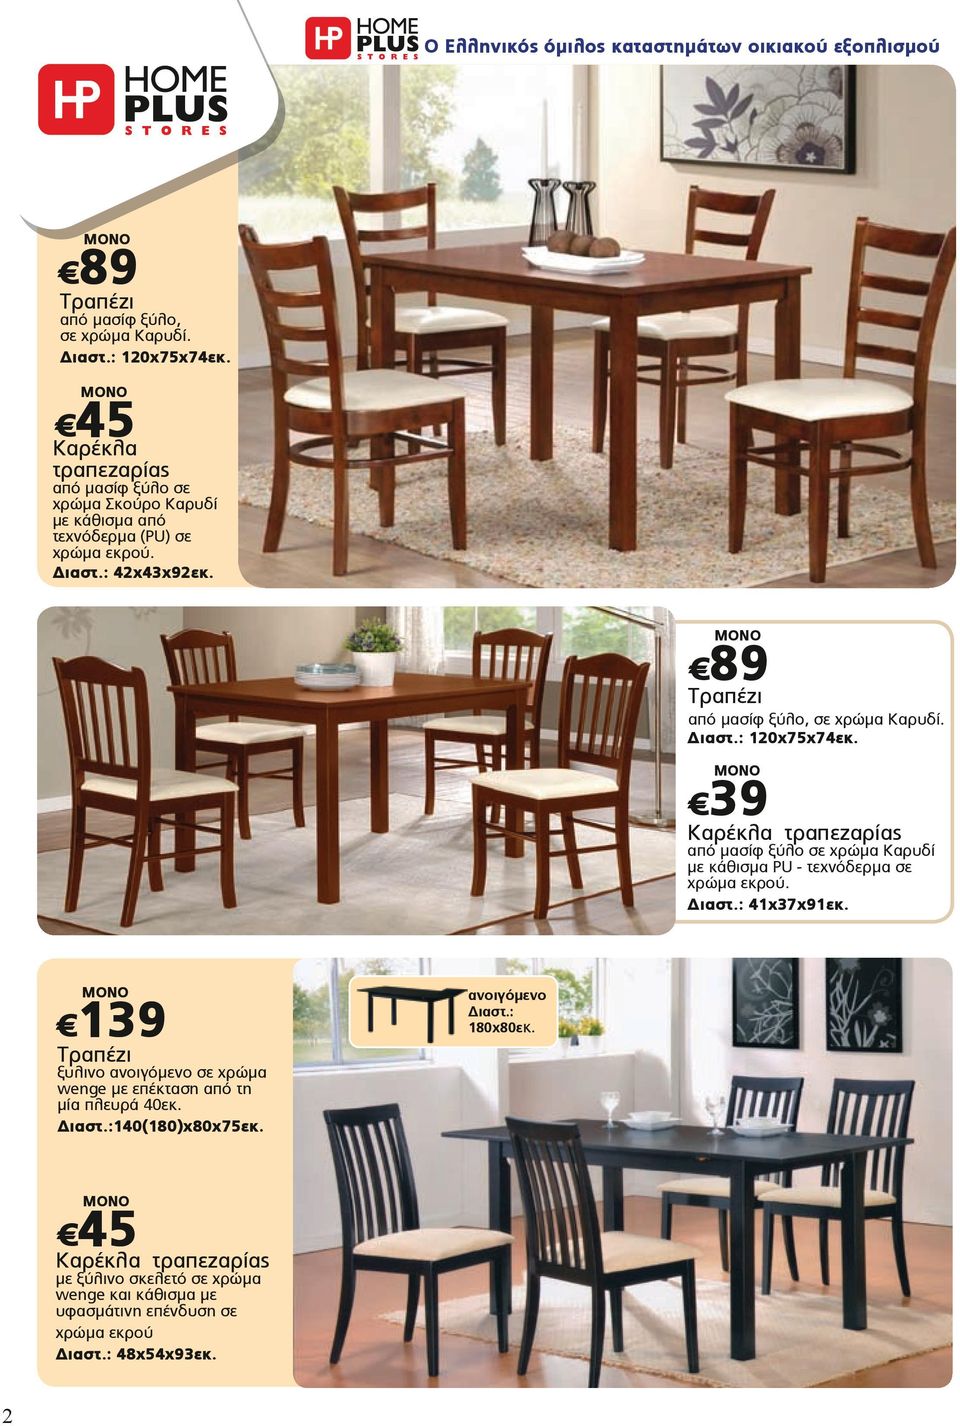 89 Τραπέζι από μασίφ ξύλο, σε χρώμα Καρυδί. 120x75x74εκ. 39 Καρέκλα τραπεζαρίας από μασίφ ξύλο σε χρώμα Καρυδί με κάθισμα PU - τεχνόδερμα σε χρώμα εκρού.